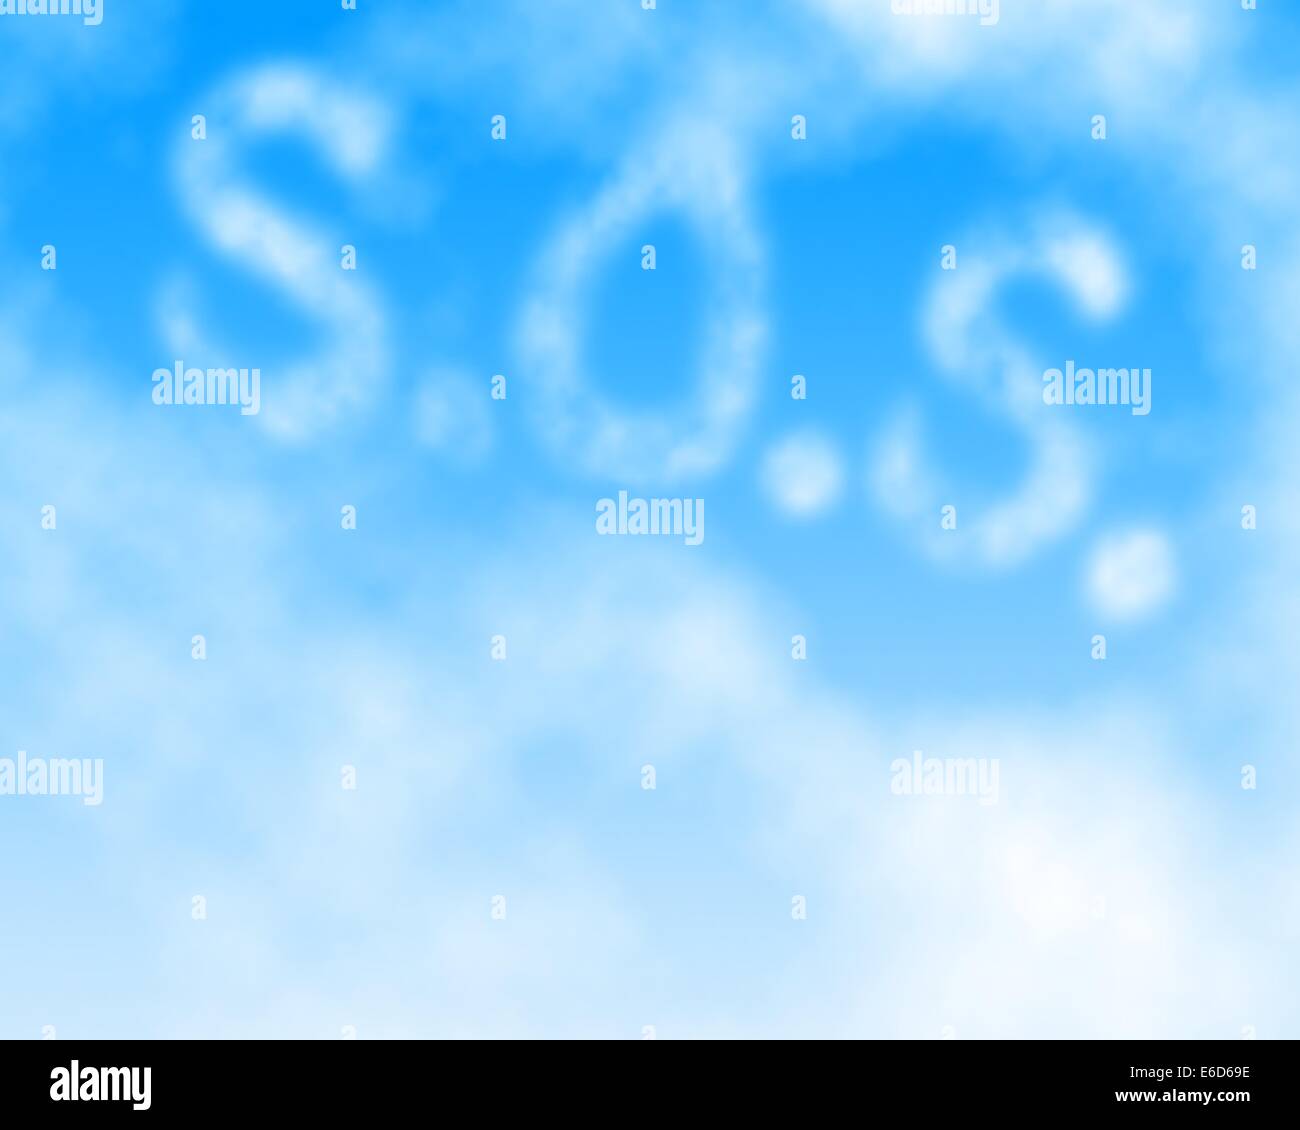 Ilustración vectorial editable de un SOS mensajes escritos en el cielo hecho utilizando una malla de degradado Ilustración del Vector